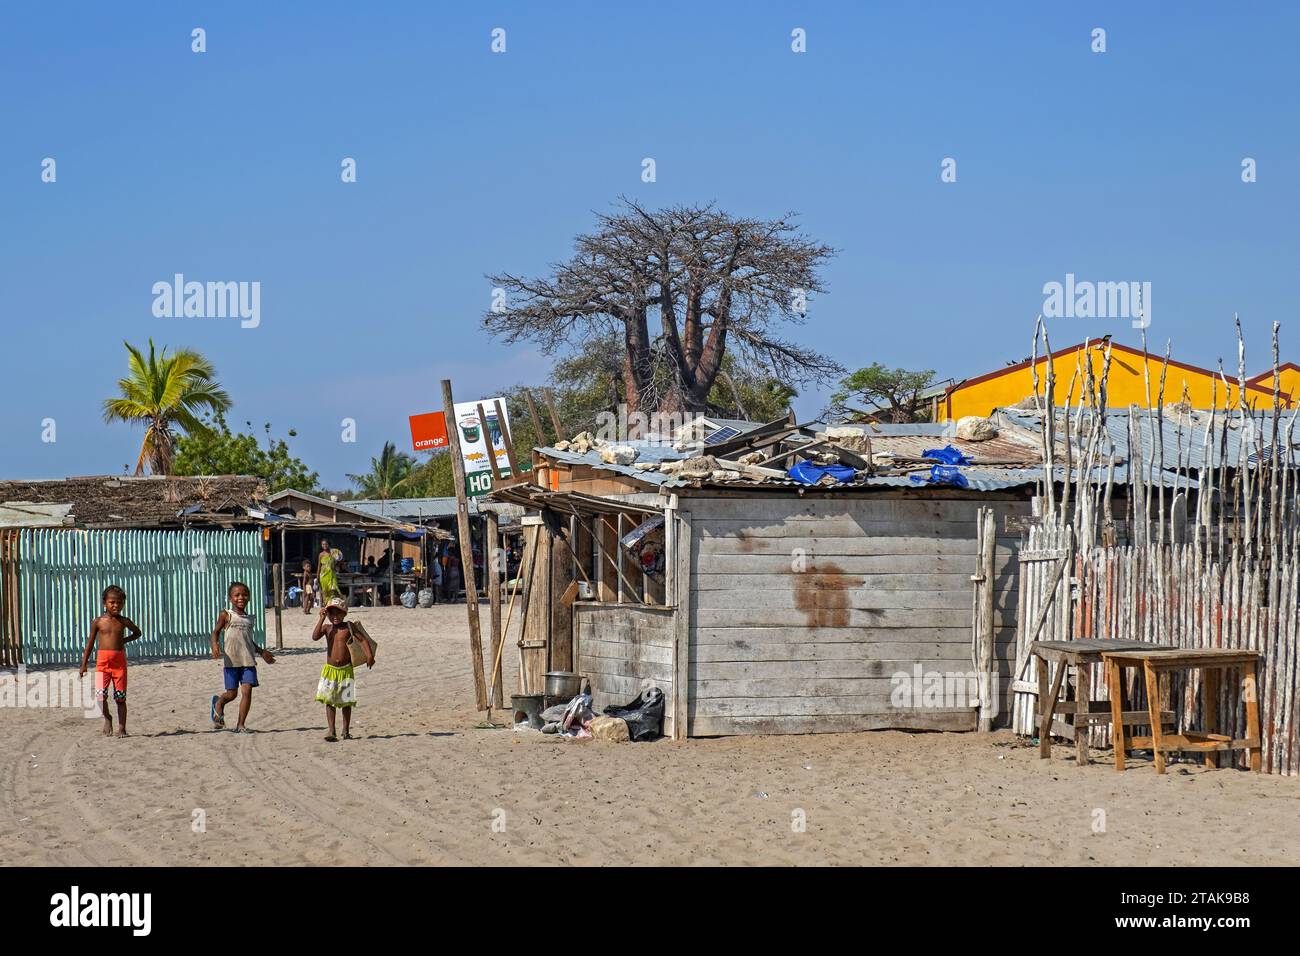 Scena di strada che mostra baracche/case di legno e bambini che giocano nel villaggio costiero di Belo sur Mer, distretto di Morondava, regione di Menabe, Madagascar Foto Stock